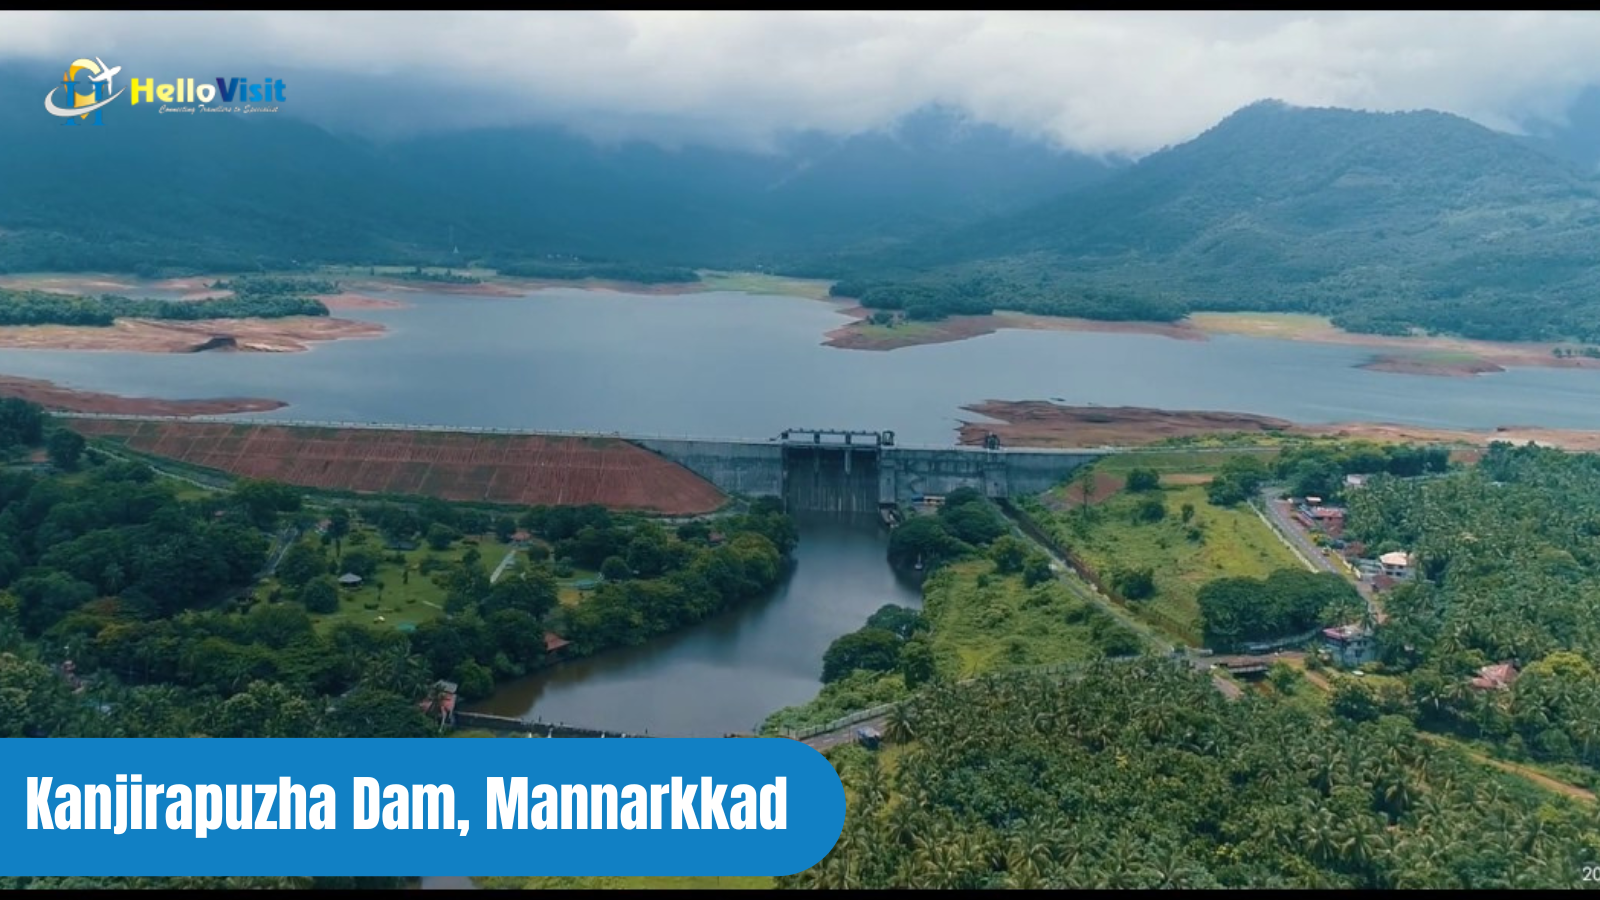 Kanjirapuzha Dam, Mannarkkad